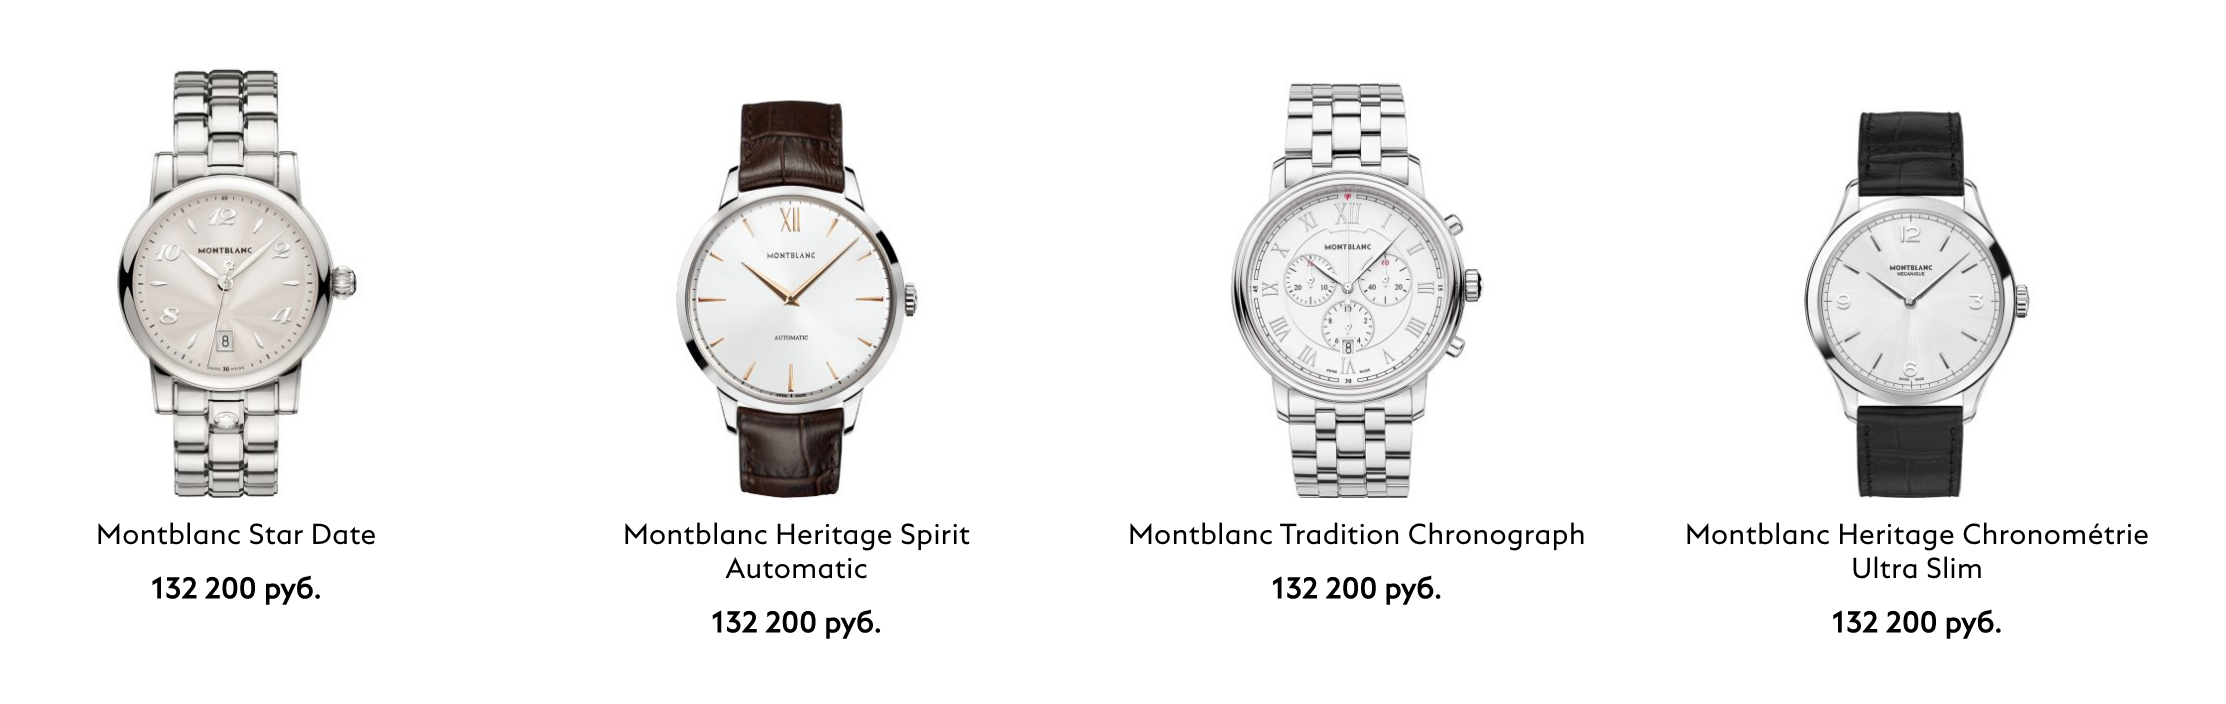 Обзор Montblanc Summit — умные часы премиум-класса с лучшей ценой в категории - 15